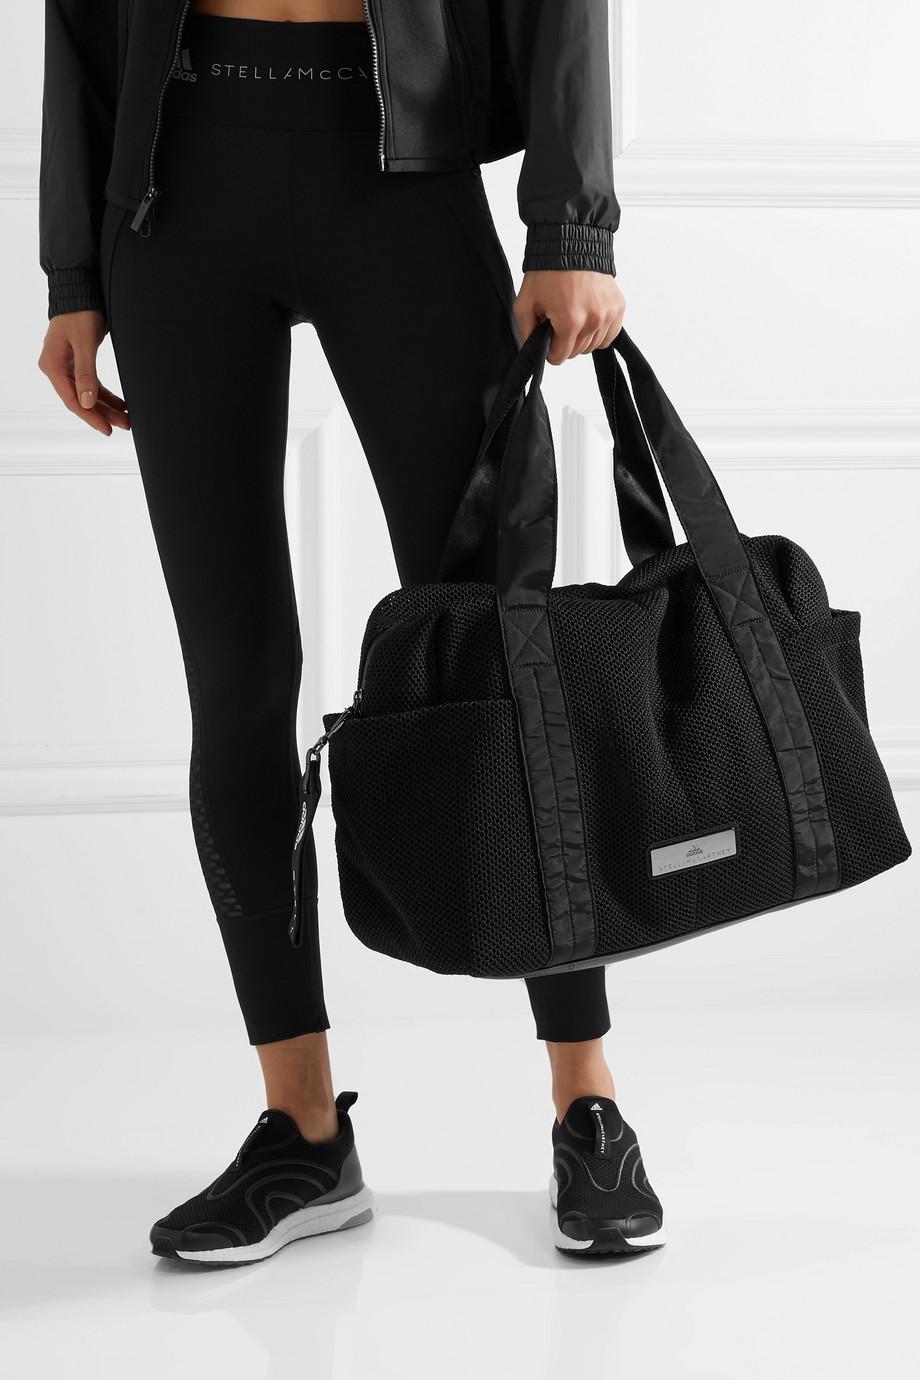 adidas By Stella McCartney Shipshape Mesh Gym Bag in Black | Lyst